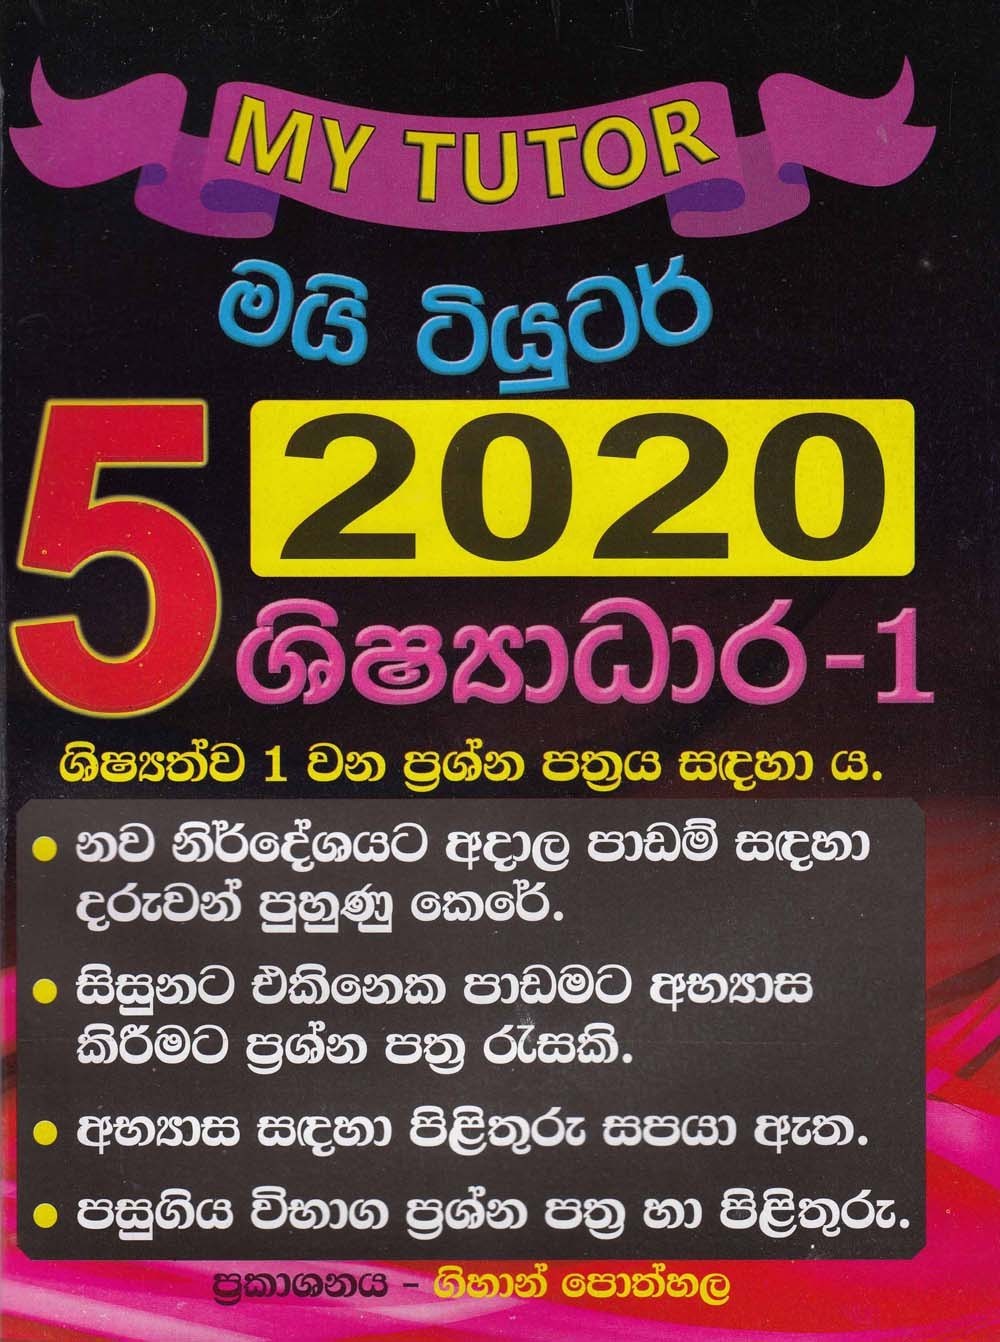 5 shishadara 1 2020